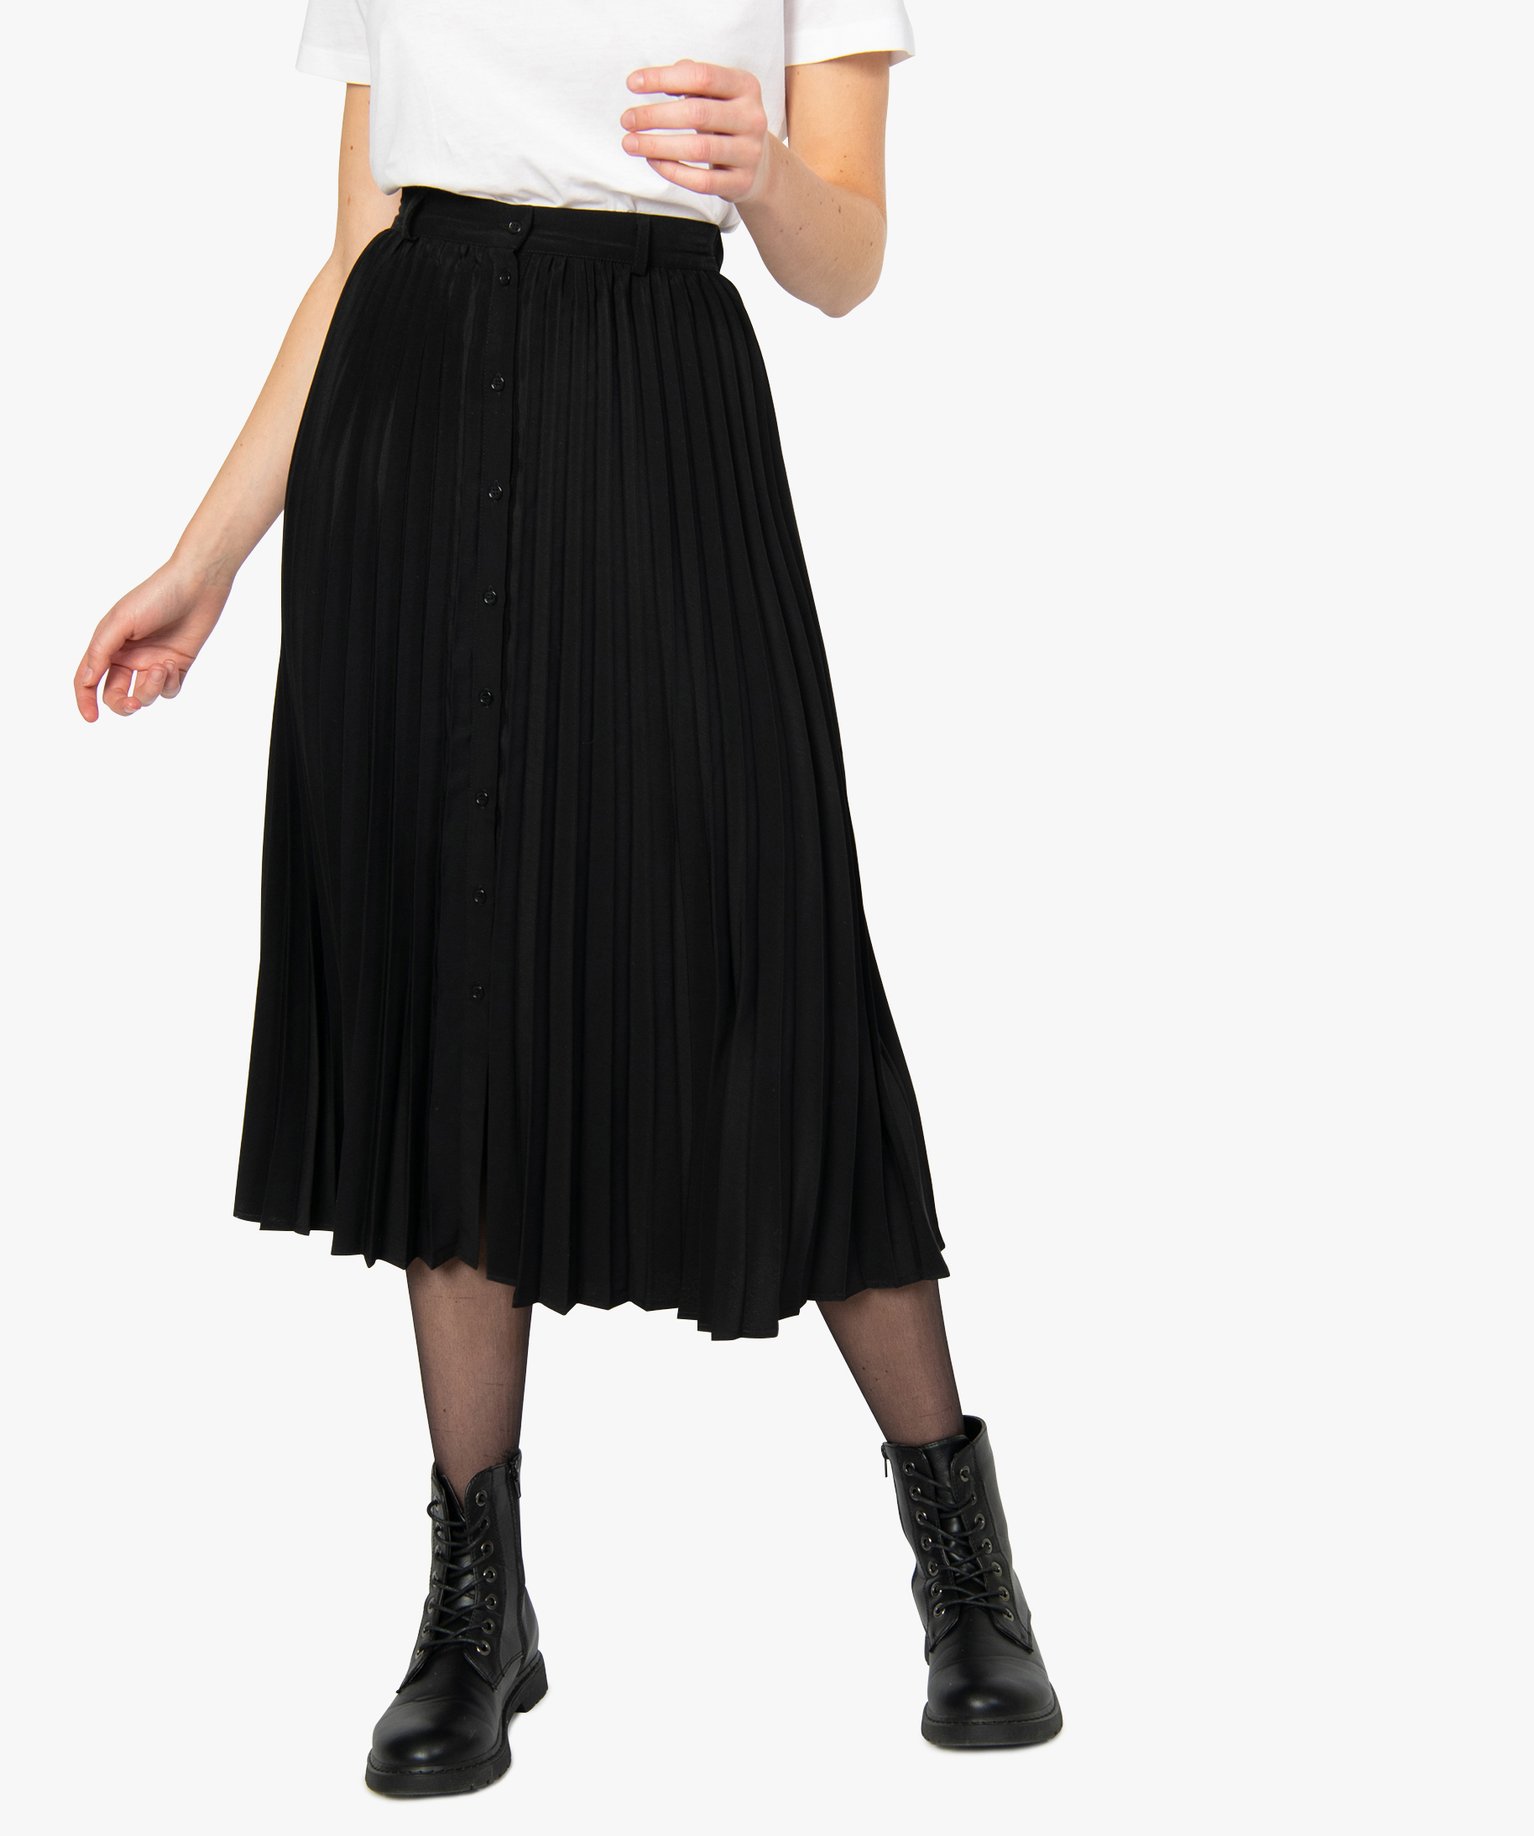 Gemo vetements jupe femme longue plissee et boutonnee noir jupes femme |  GÉMO